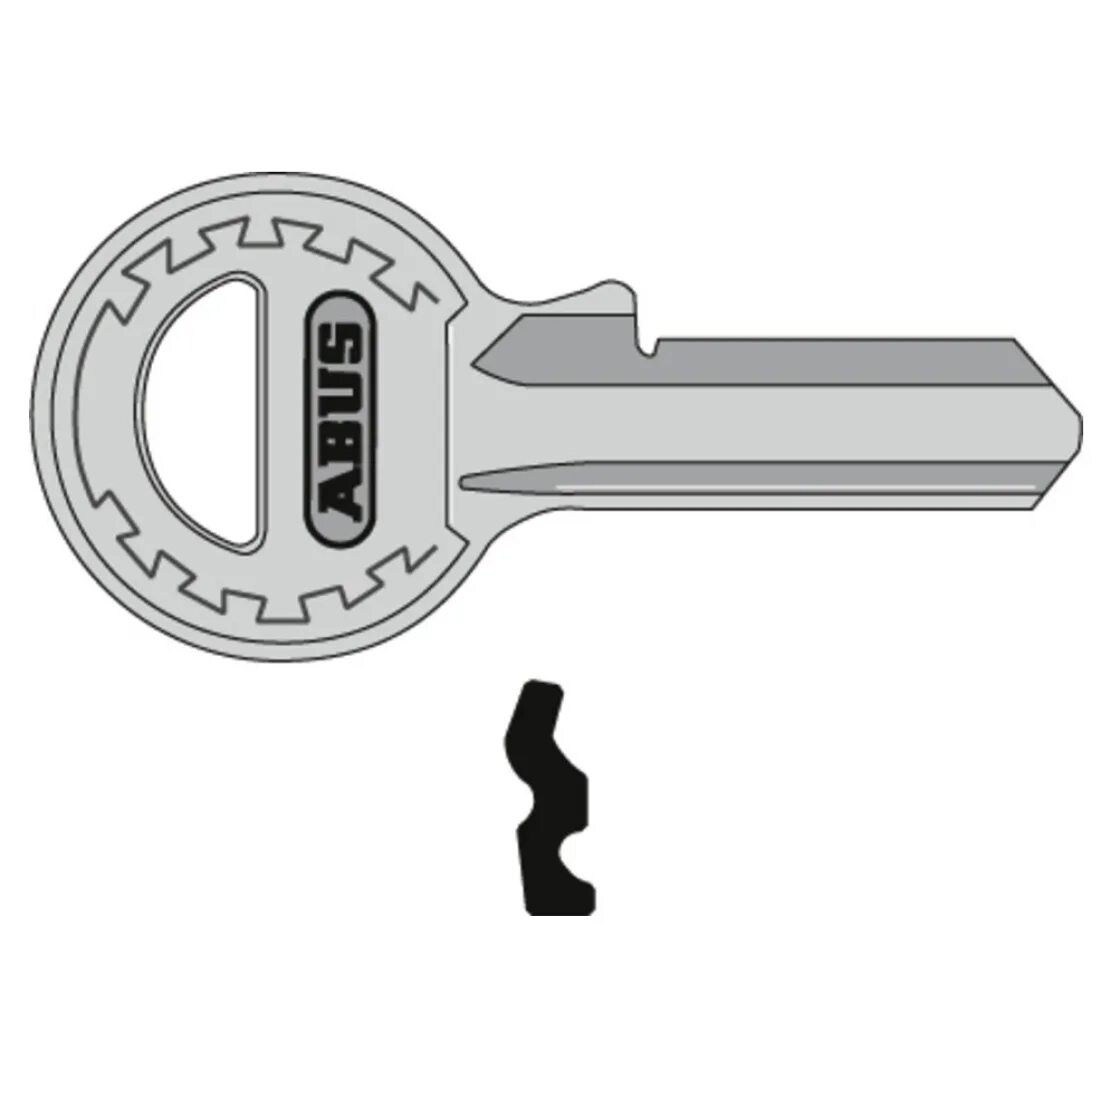 Profile key. Профильный ключ. Профиль ключа. Тип ключа профильный. Приспособление Кейчеккер для проверки профиля ключа.